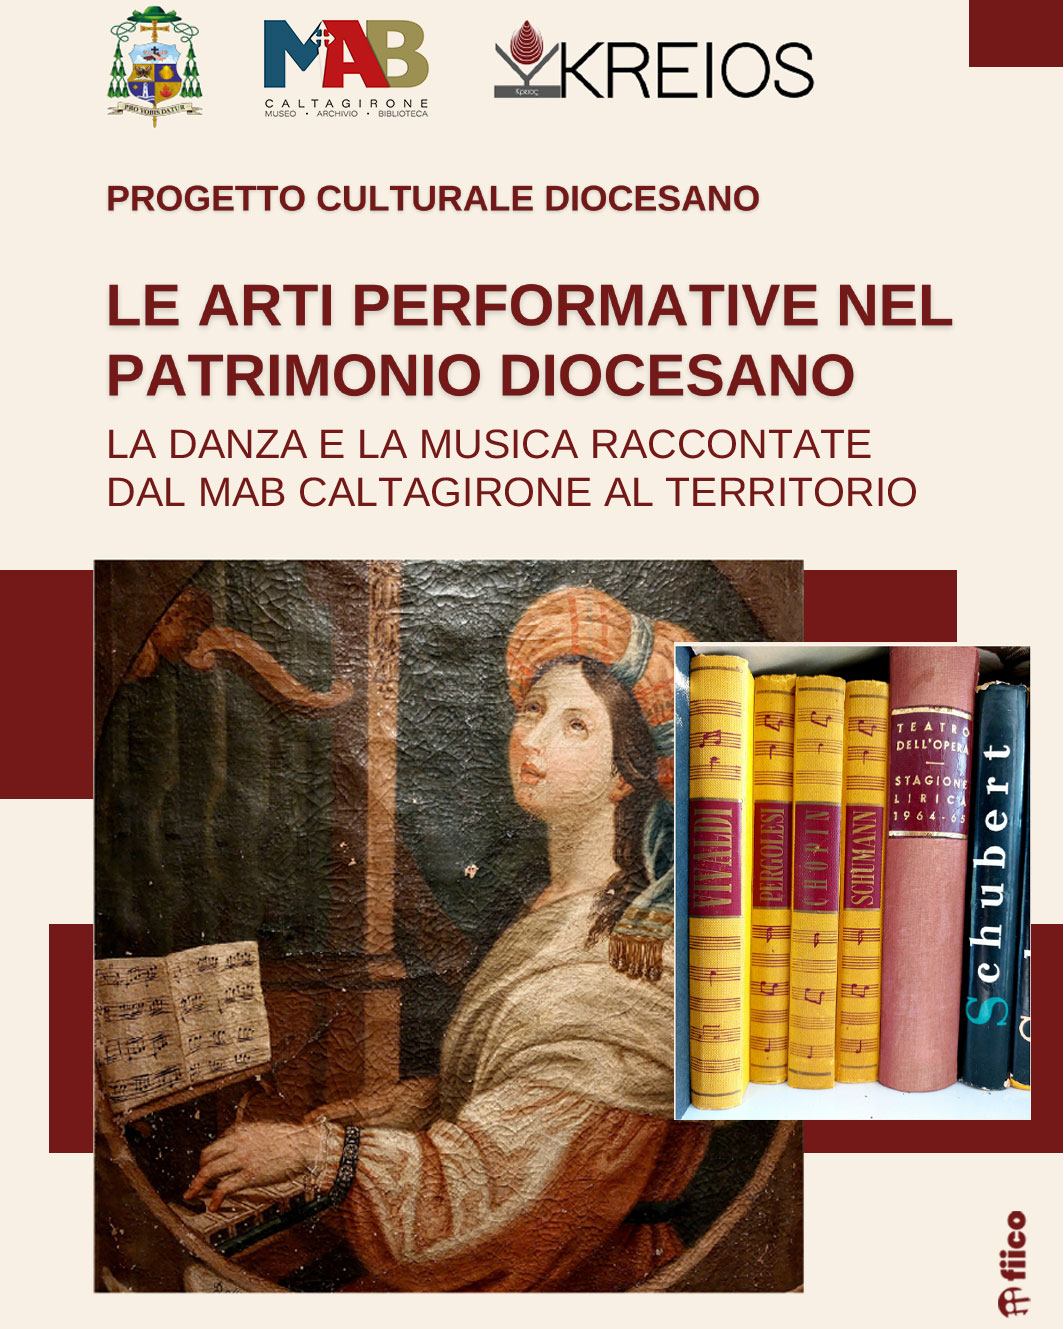 museo-1 "Le arti performative nel patrimonio diocesano a Caltagirone: un omaggio alla bellezza e alla cultura"